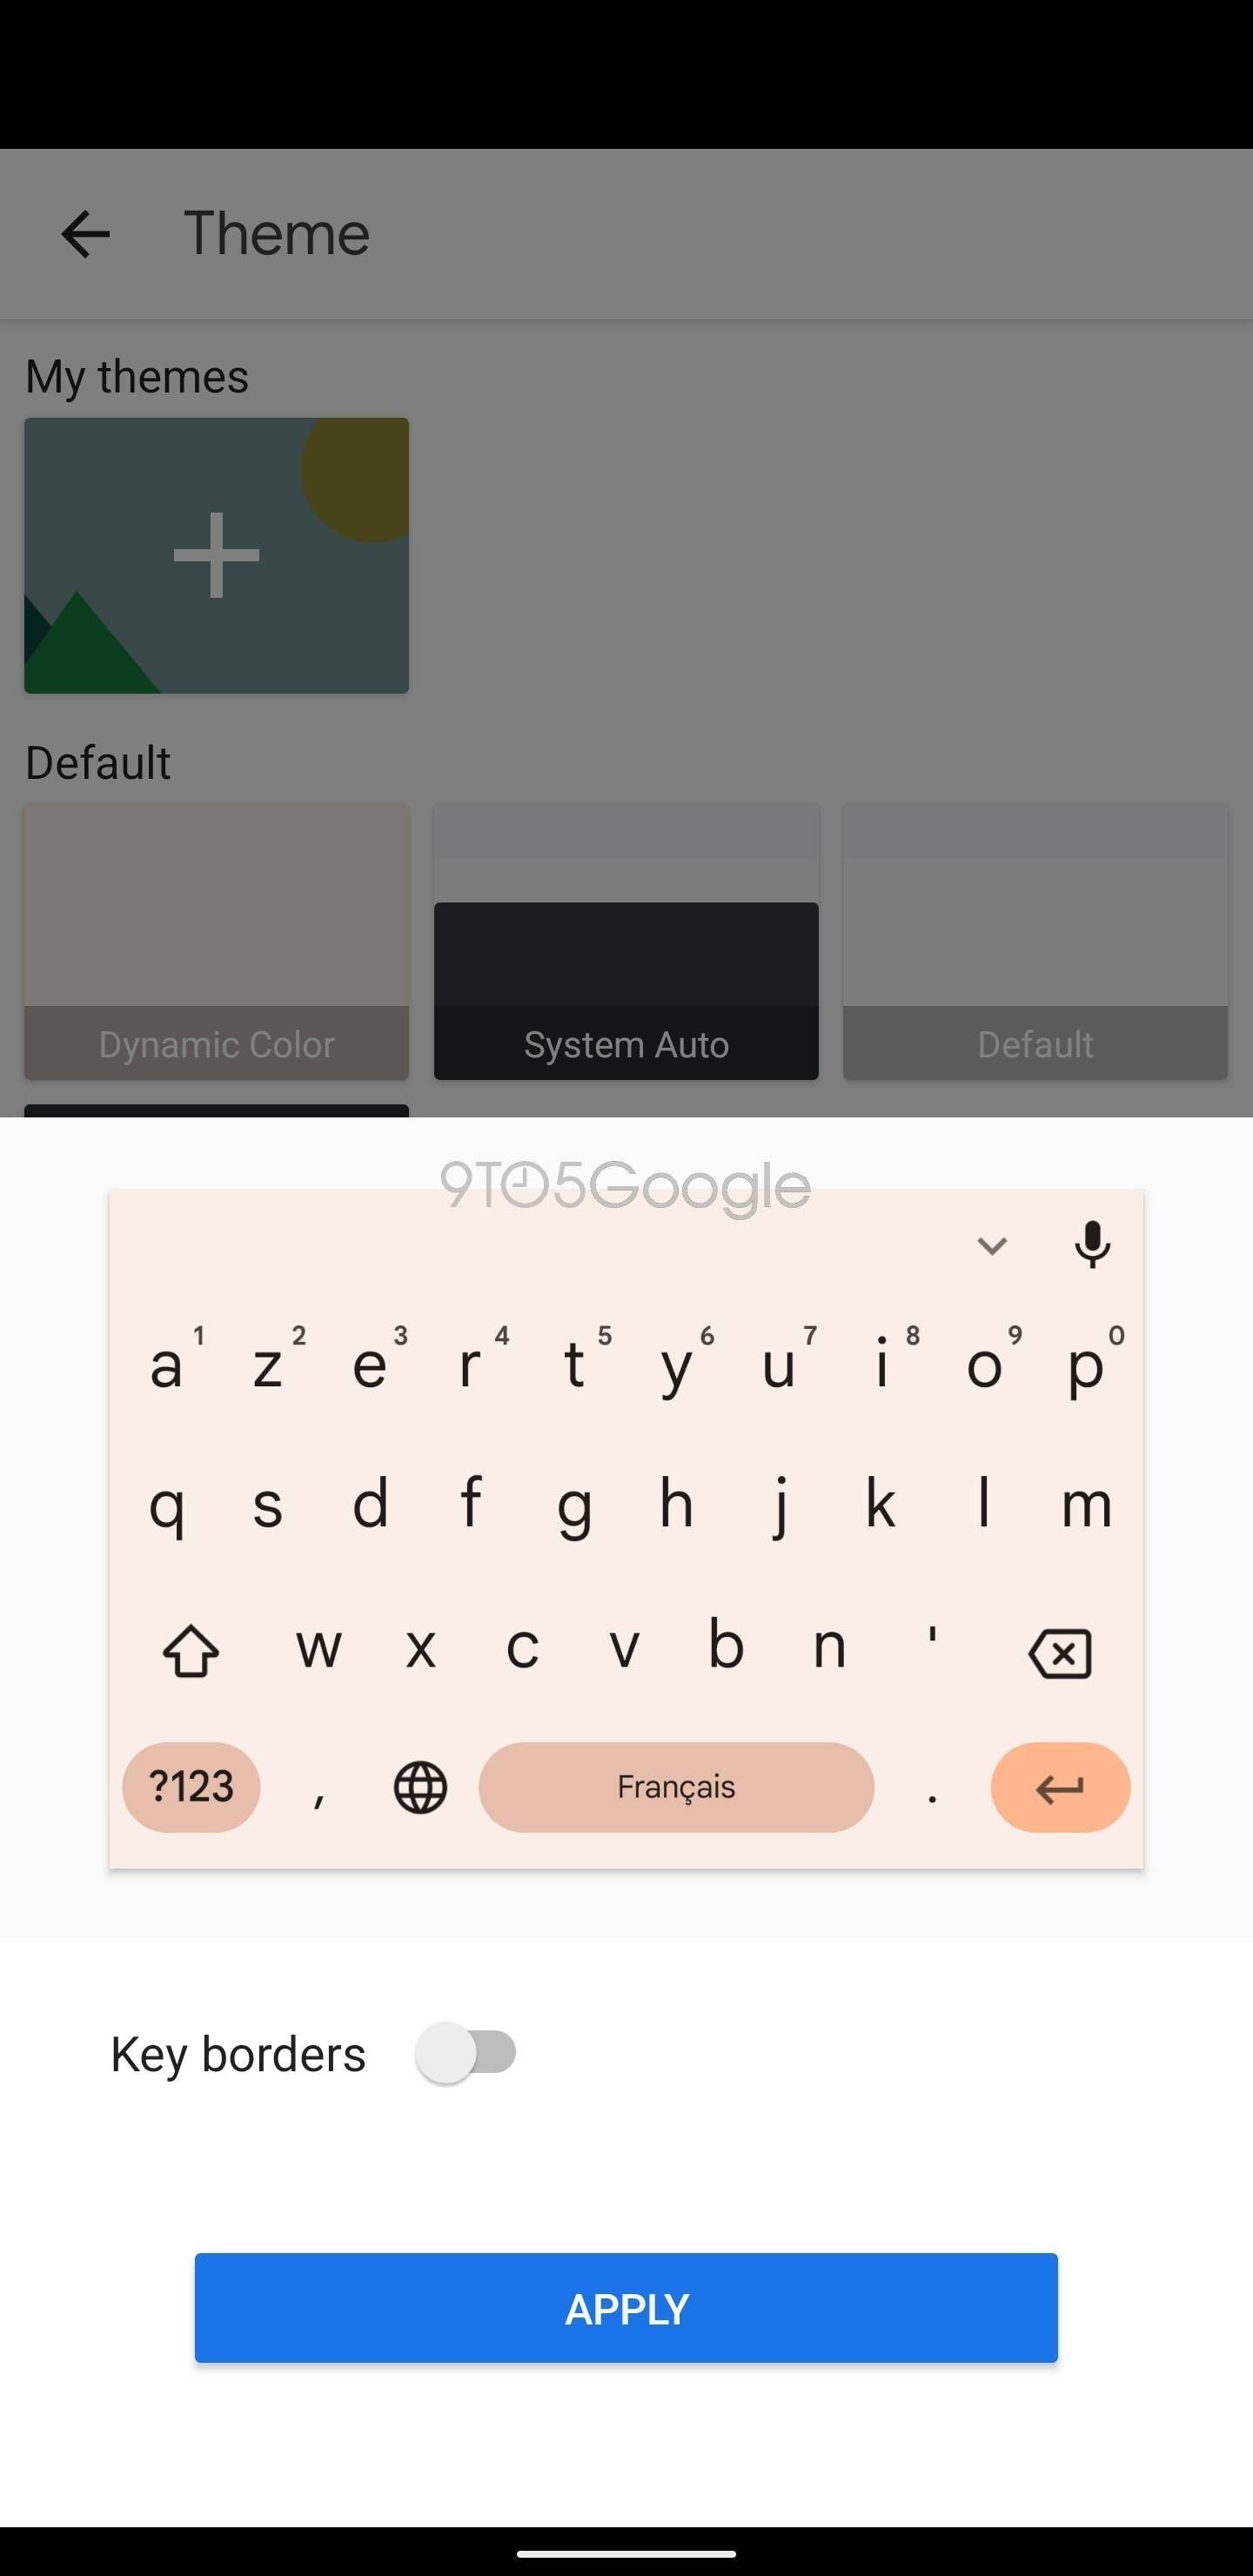 Gboard, Chrome y Mensajes: así lucirán las apps de Google con el nuevo diseño "Material You"